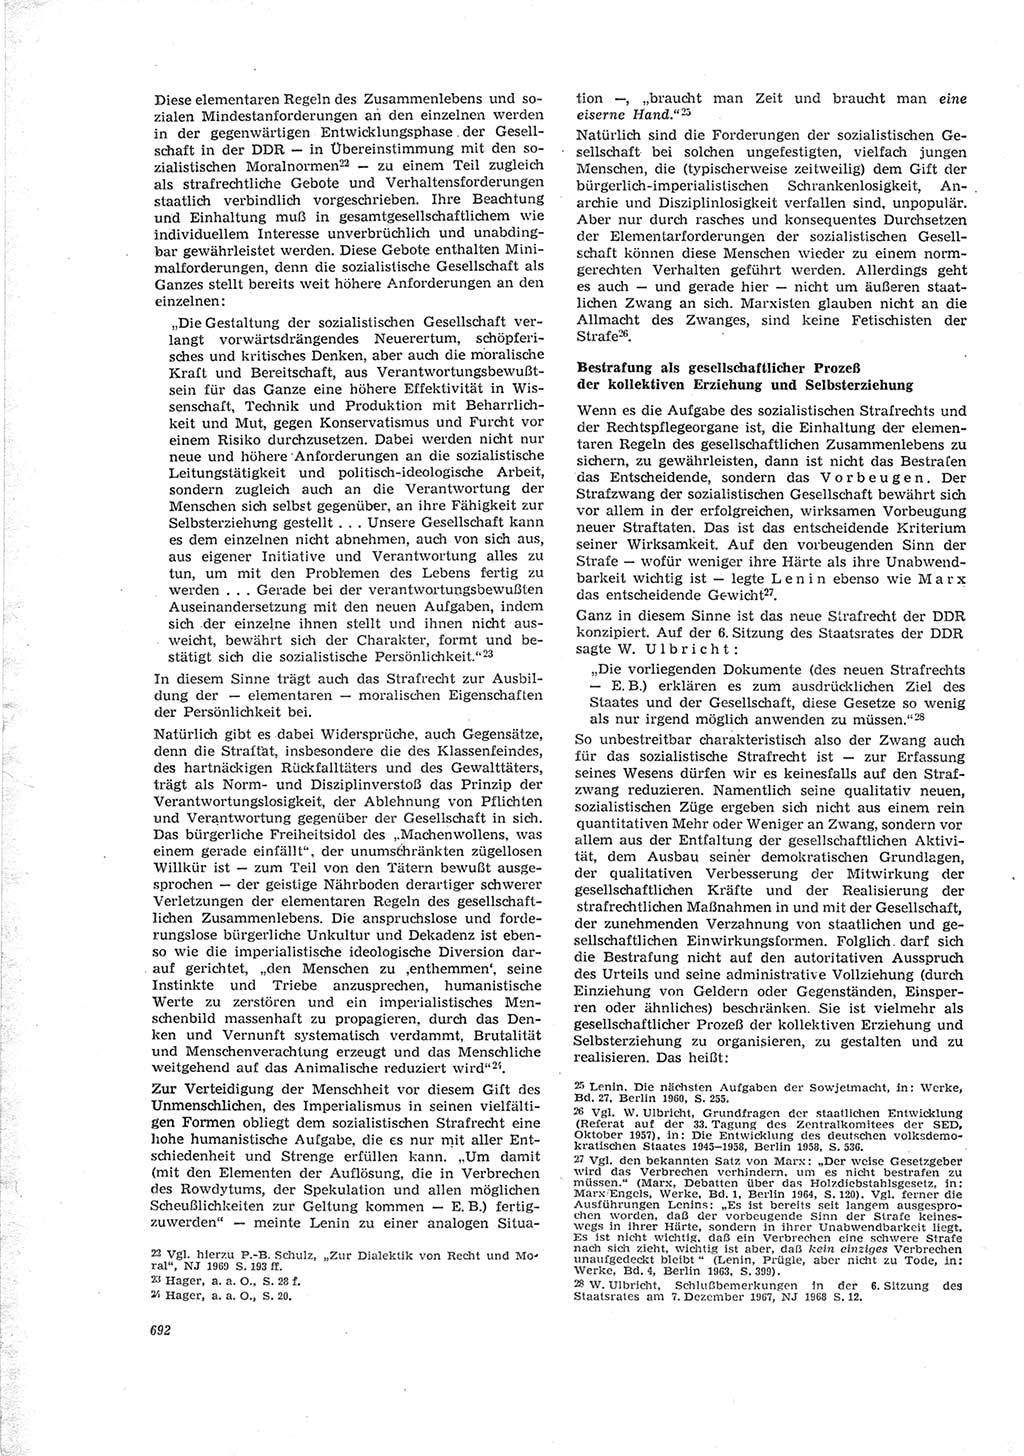 Neue Justiz (NJ), Zeitschrift für Recht und Rechtswissenschaft [Deutsche Demokratische Republik (DDR)], 23. Jahrgang 1969, Seite 692 (NJ DDR 1969, S. 692)